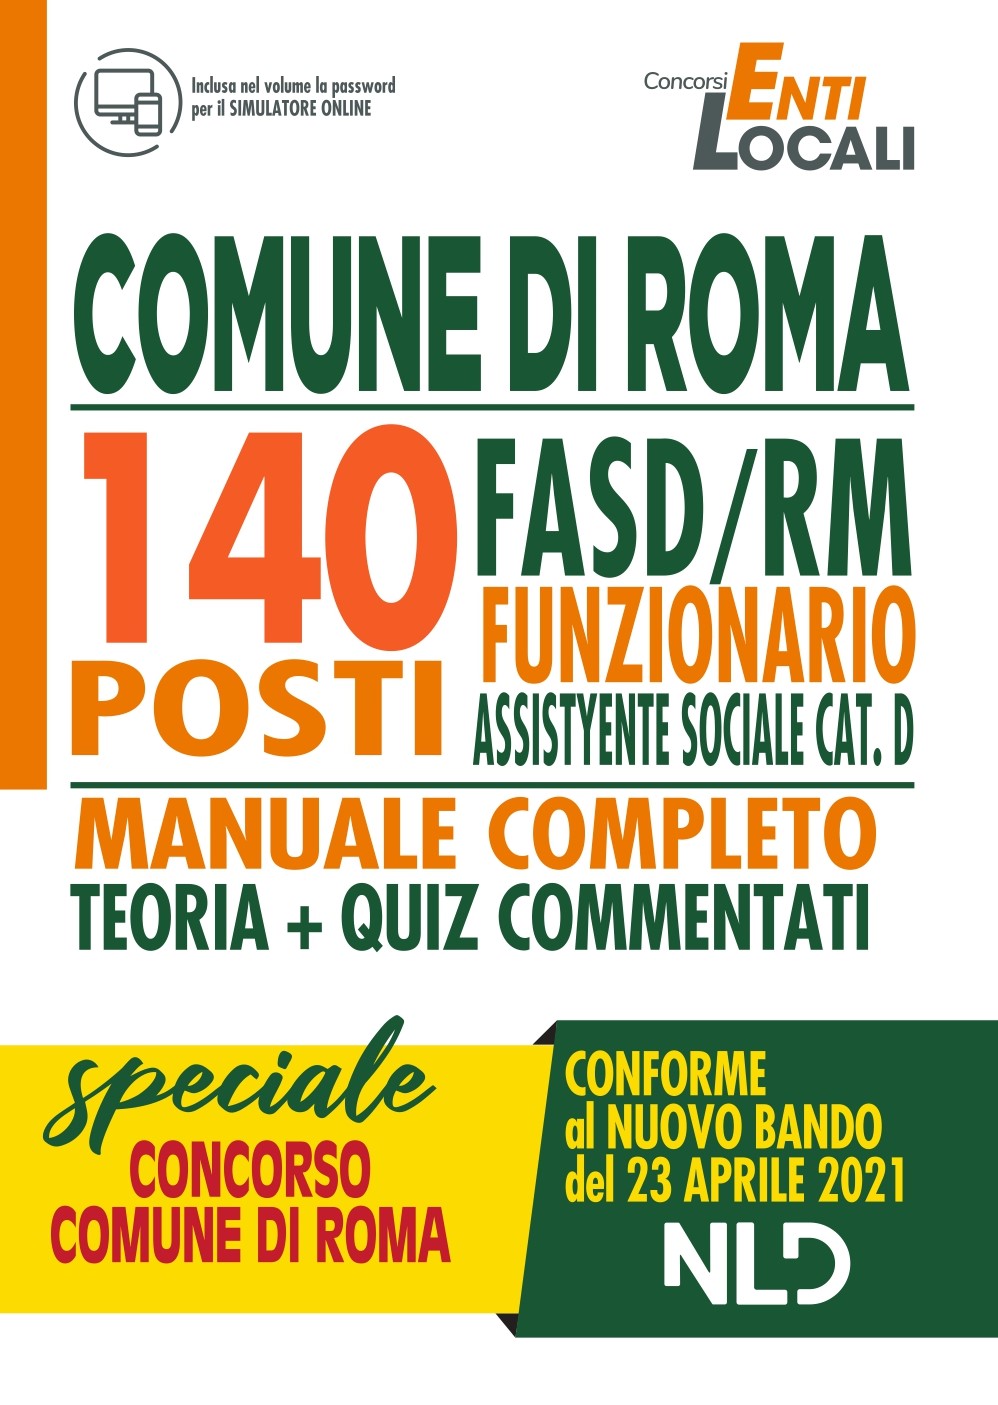 Concorso 1512 Comune di Roma:140 Posti Funzionario Assistente Sociale cat.D